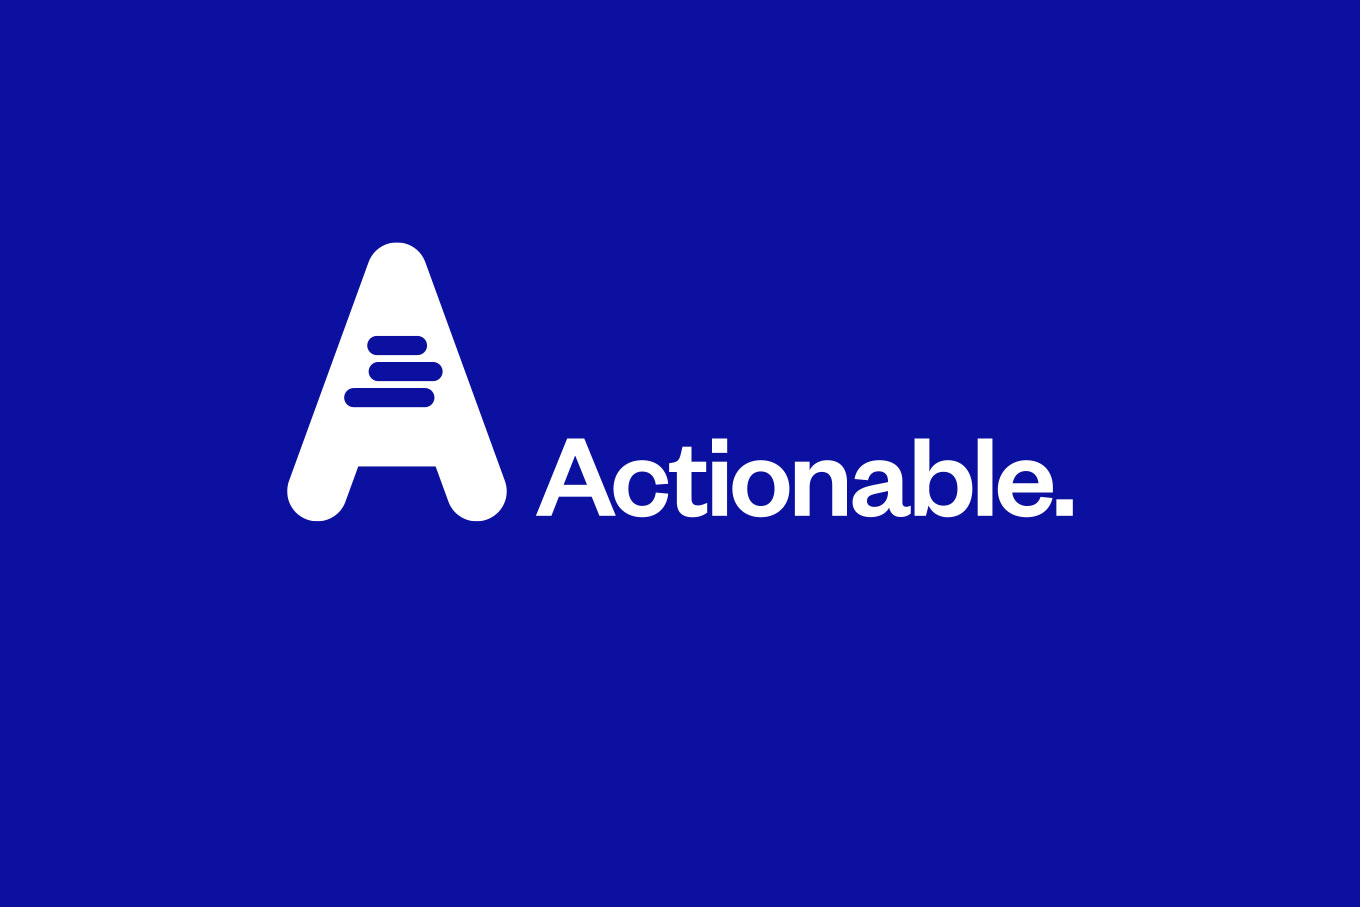 Actionable logo and wordmark